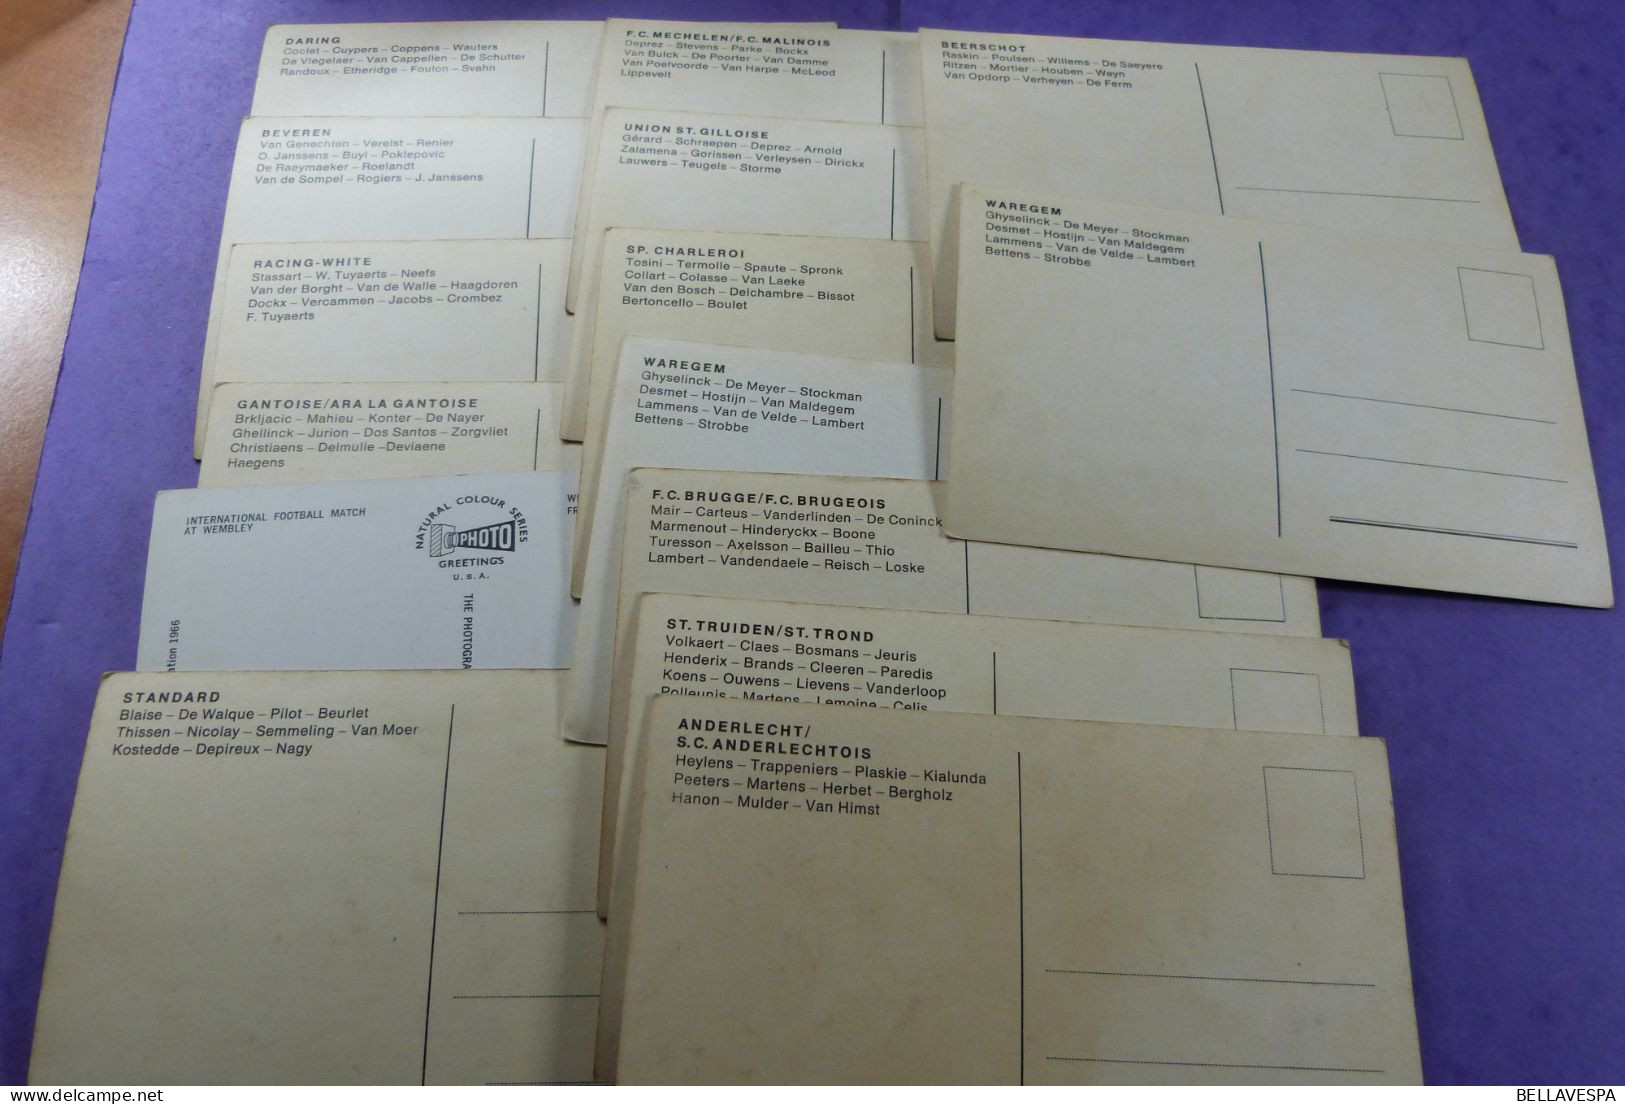 Lot varia ruim 900 stuks vnl postkaarten cpsm en cpa ook  recentere thema Publi kaarten expo Vedetten voetbal ...